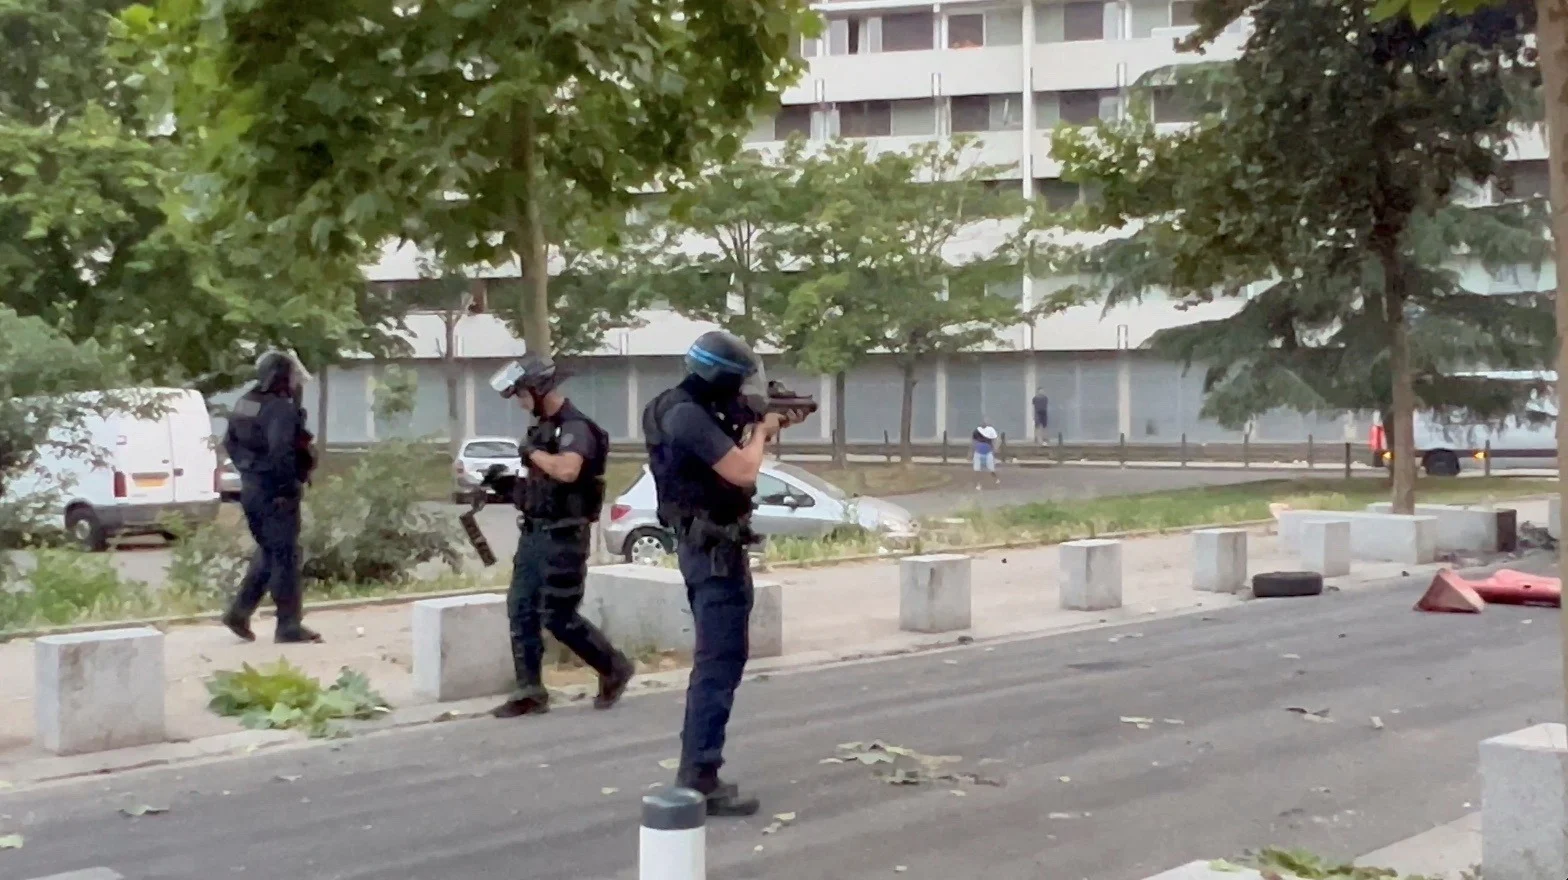 שוטרים צרפתים יורים אמצעים לפיזור הפגנות